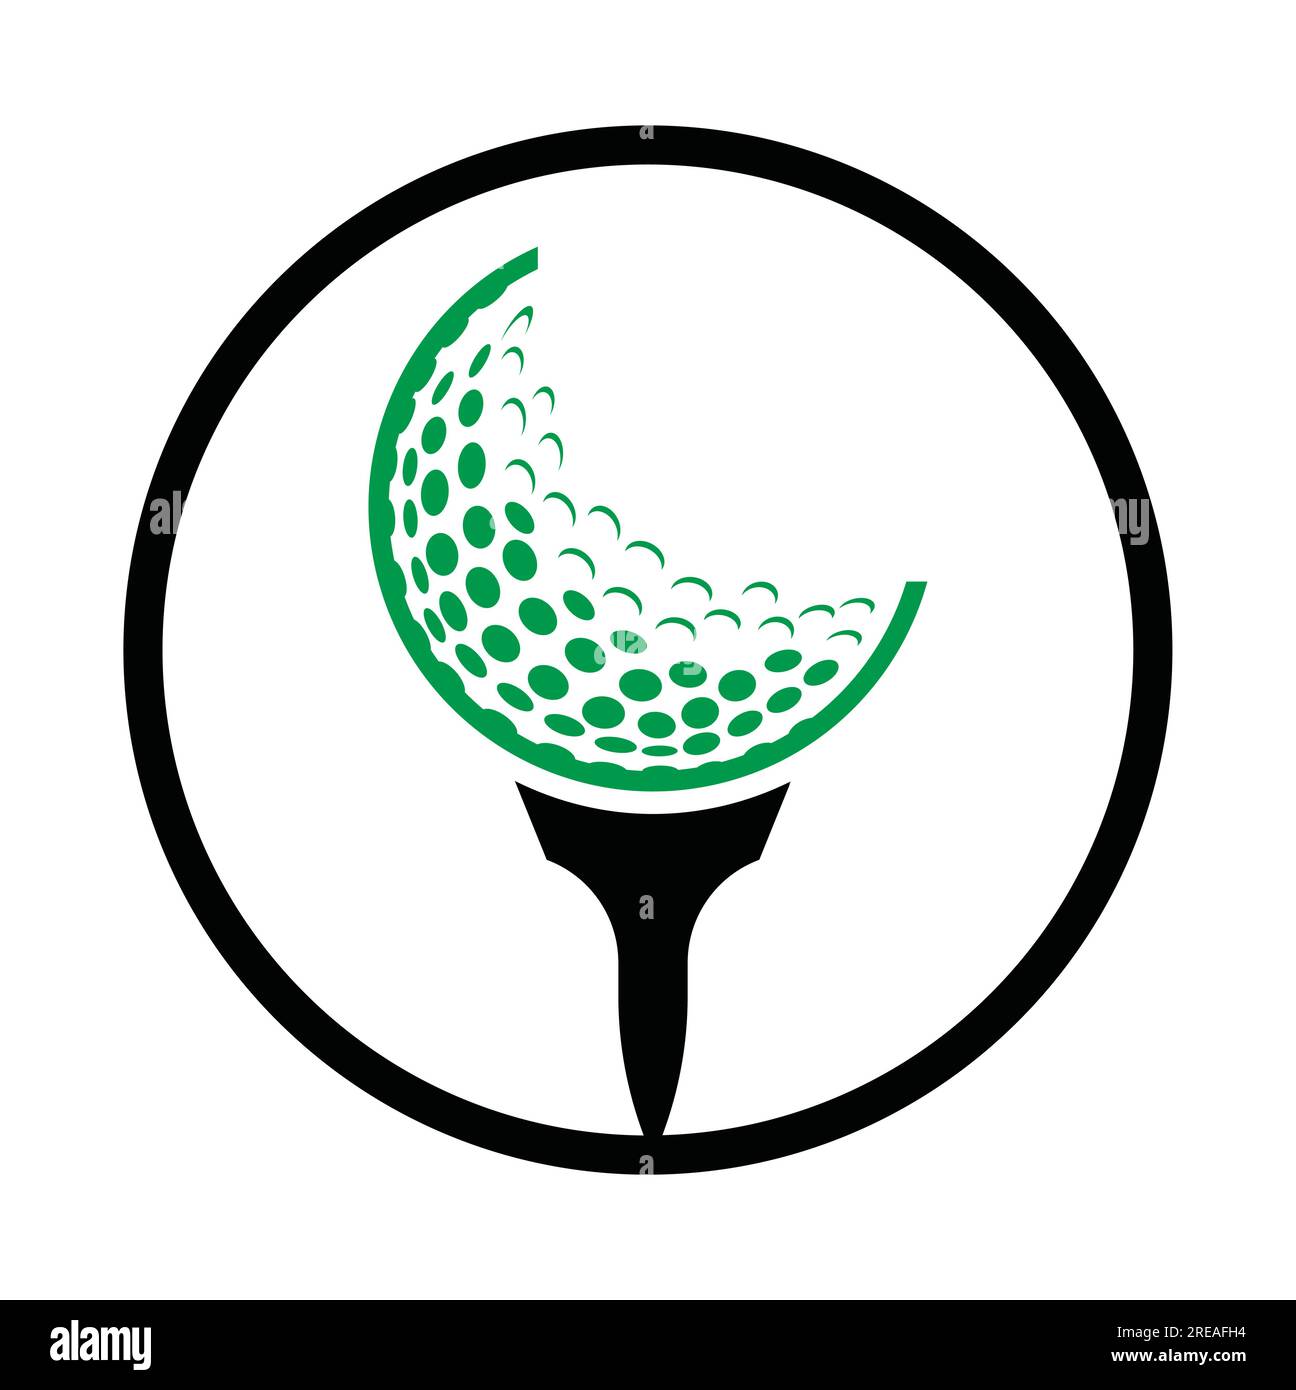 Golf Logo Design Template Vector. Golf ball on tee logo design icon ...